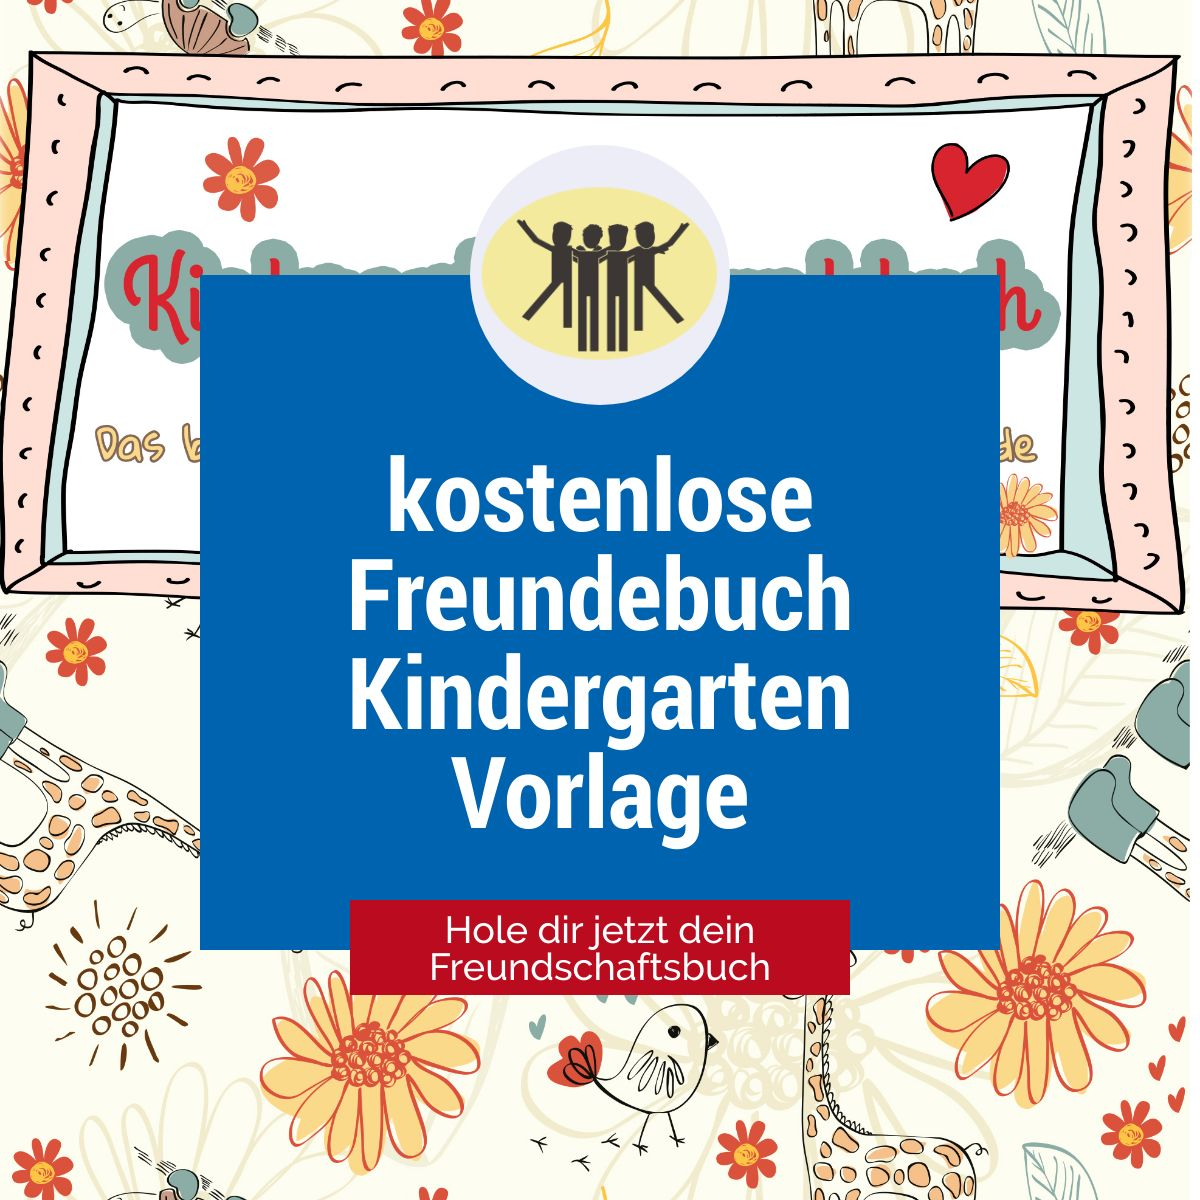 Kostenloses Freundebuch Kindergarten Selbst Gestalten